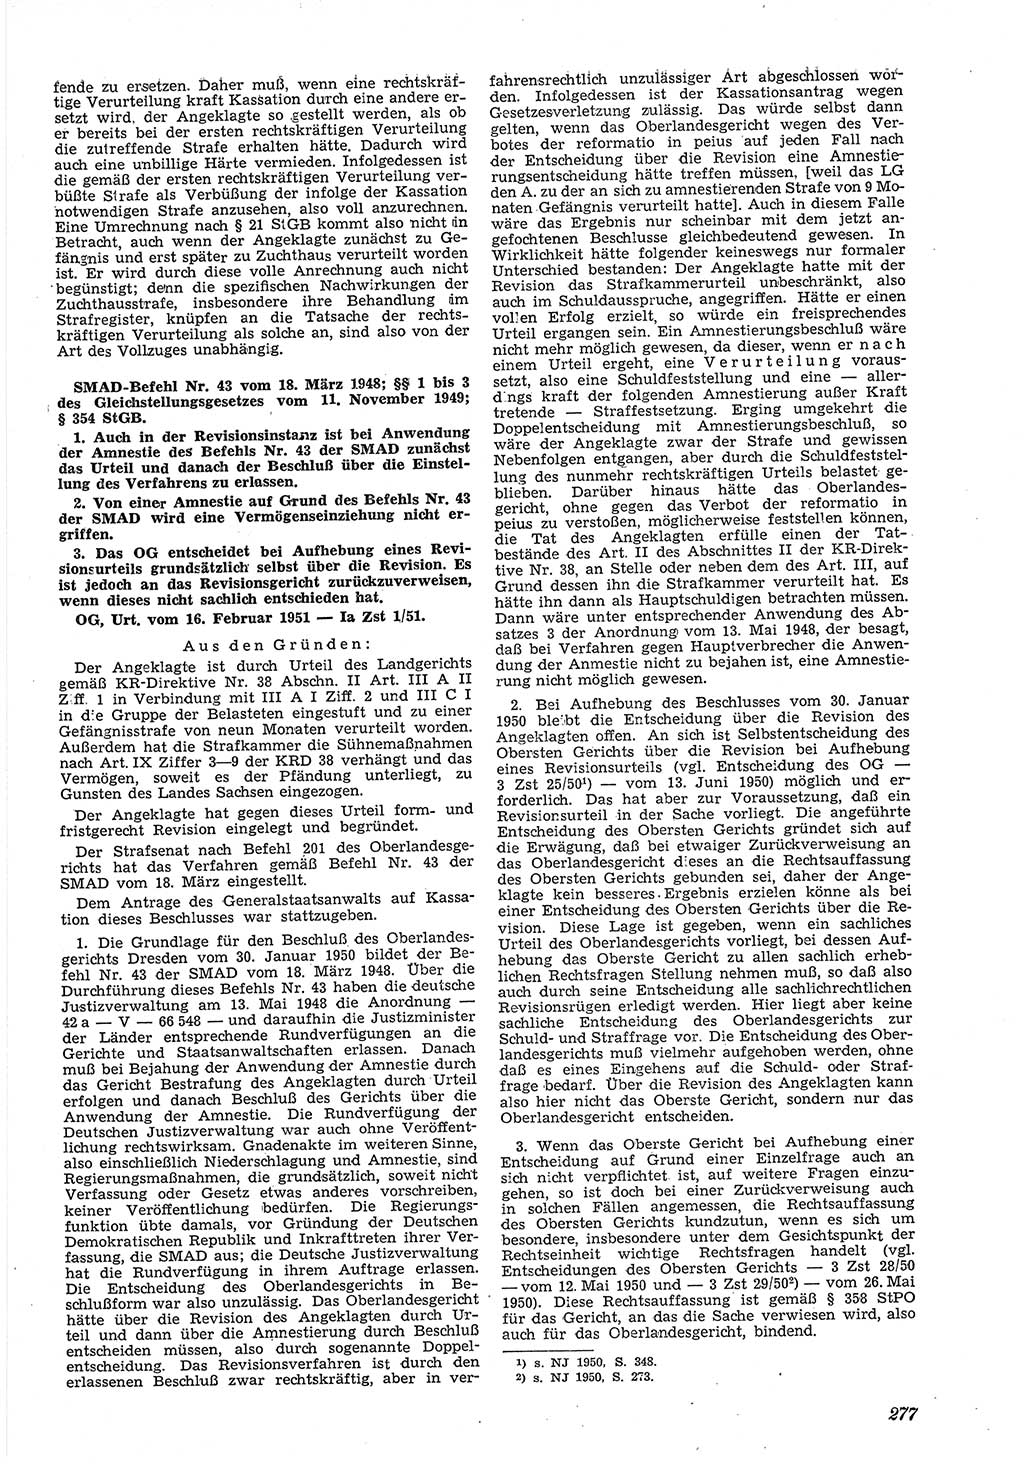 Neue Justiz (NJ), Zeitschrift für Recht und Rechtswissenschaft [Deutsche Demokratische Republik (DDR)], 5. Jahrgang 1951, Seite 277 (NJ DDR 1951, S. 277)